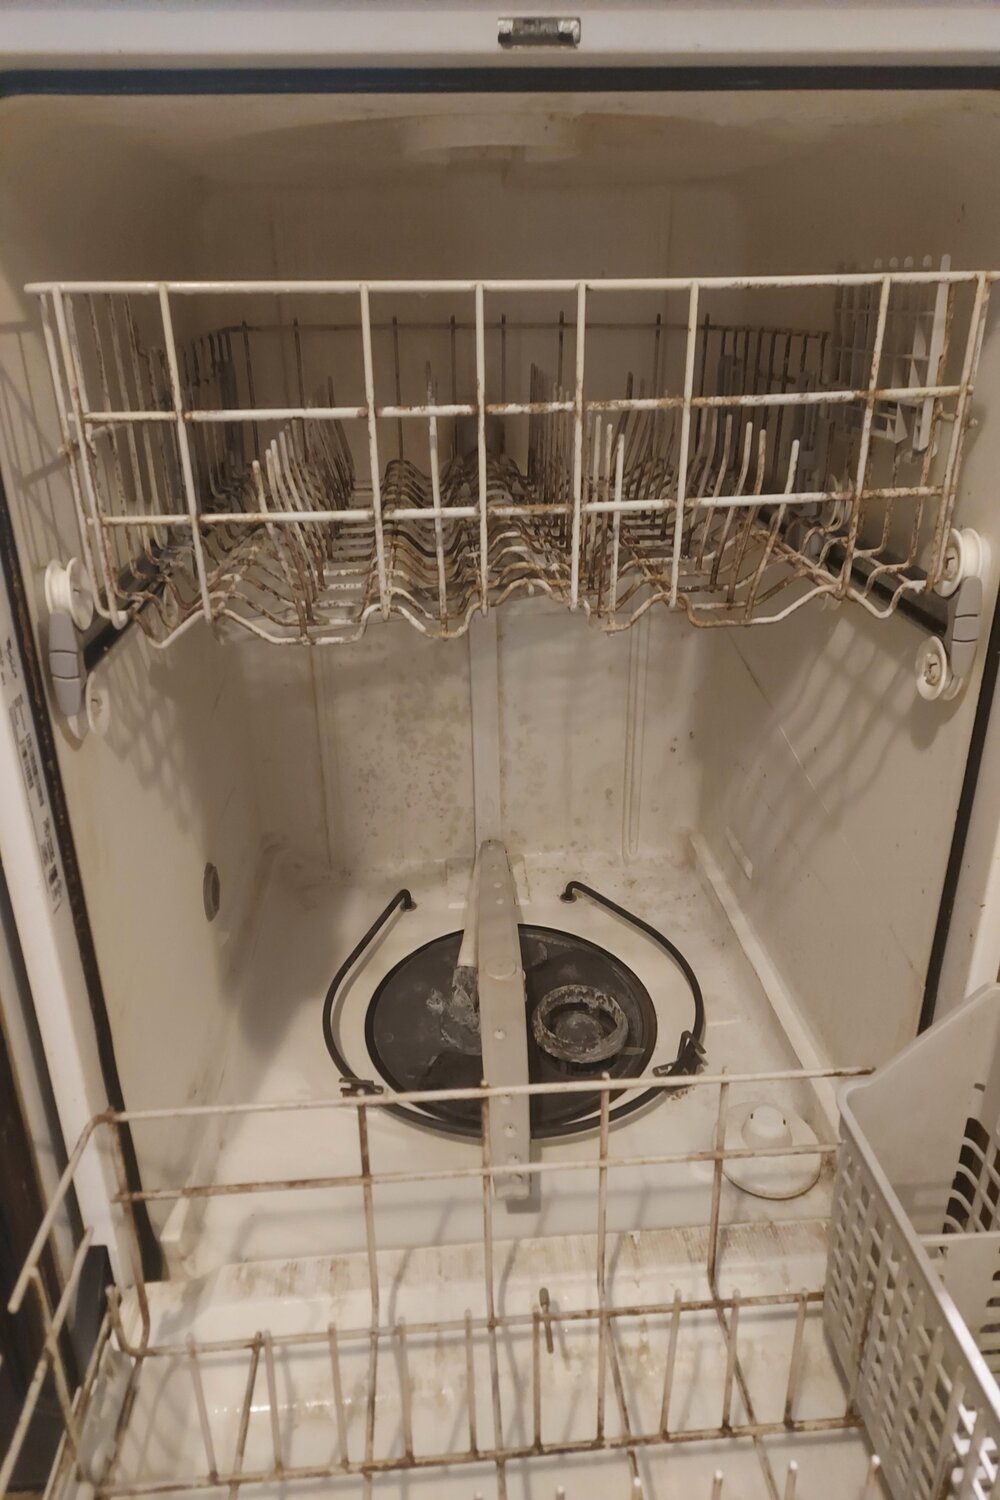 moldy dish washer